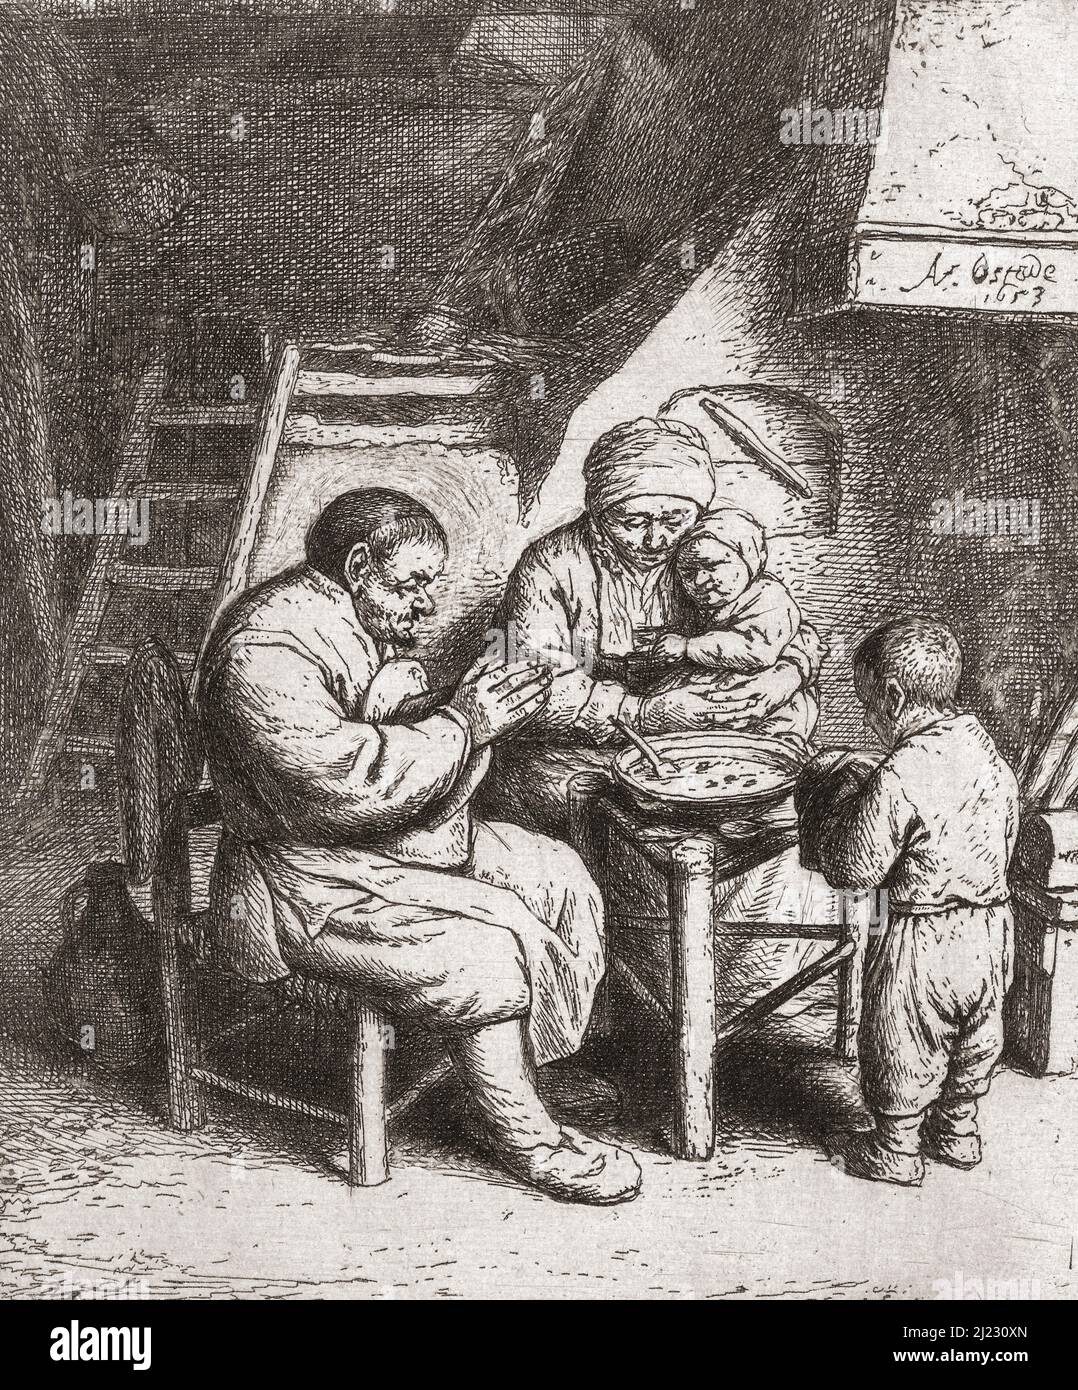 Une famille paysanne pauvre dit grâce avant de commencer leur repas à partir d'une assiette commune. Après une oeuvre d'Adriaen van Ostade en date de 1653. Banque D'Images